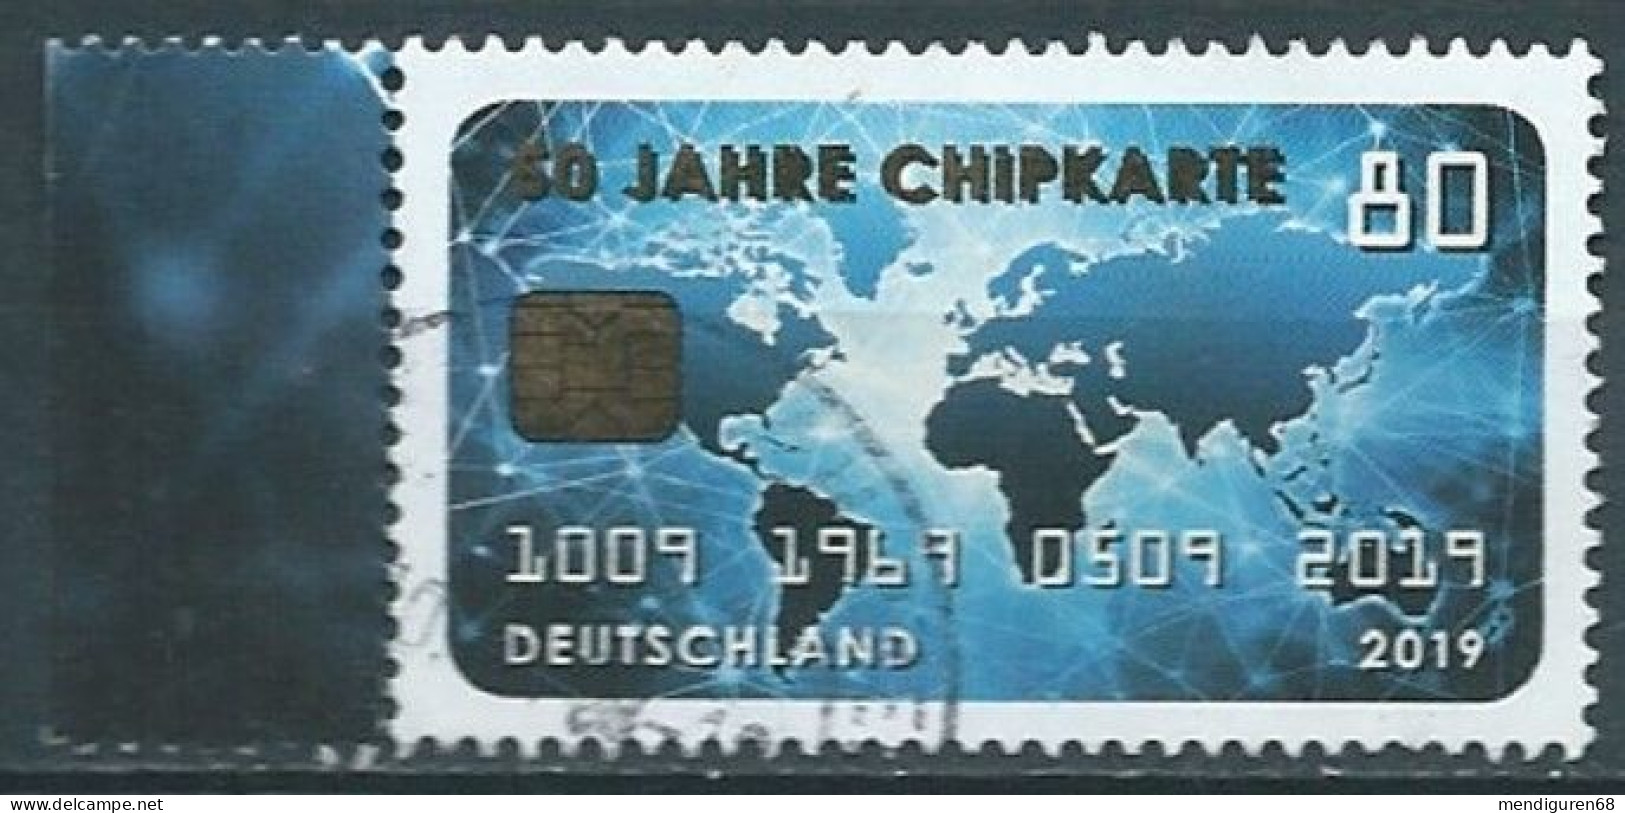 ALLEMAGNE ALEMANIA GERMANY DEUTSCHLAND BUND 2019 50 JAHRE CHIPKARTE CHIP CARD USED MI 3494 YT 3272 SN 3124 SG 4270 - Gebraucht